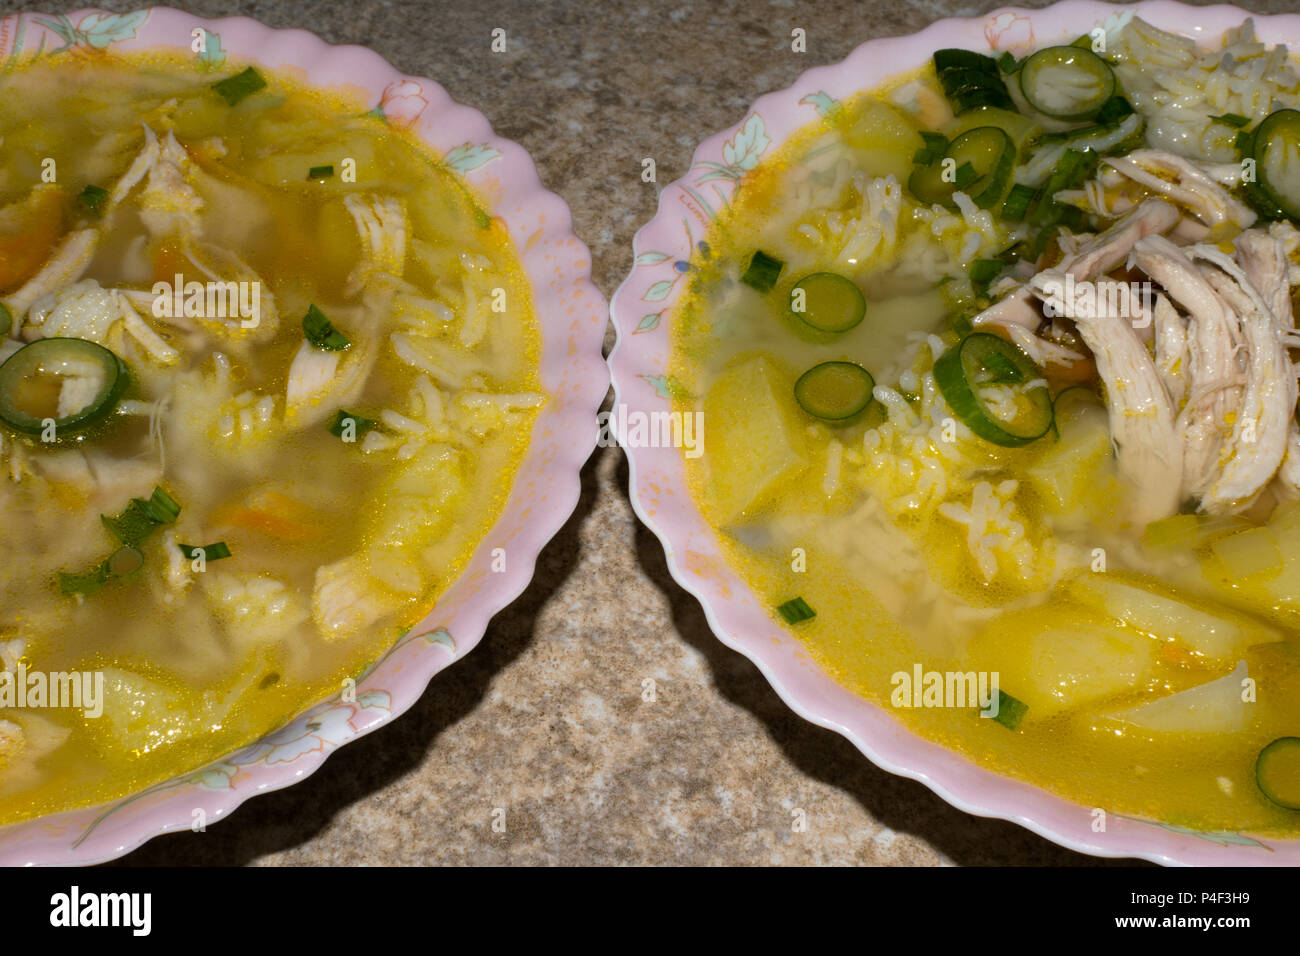 Zuppa di pollo con pasta e verdure in due piatti con cucchiaio. Bambini menu zuppa Foto Stock